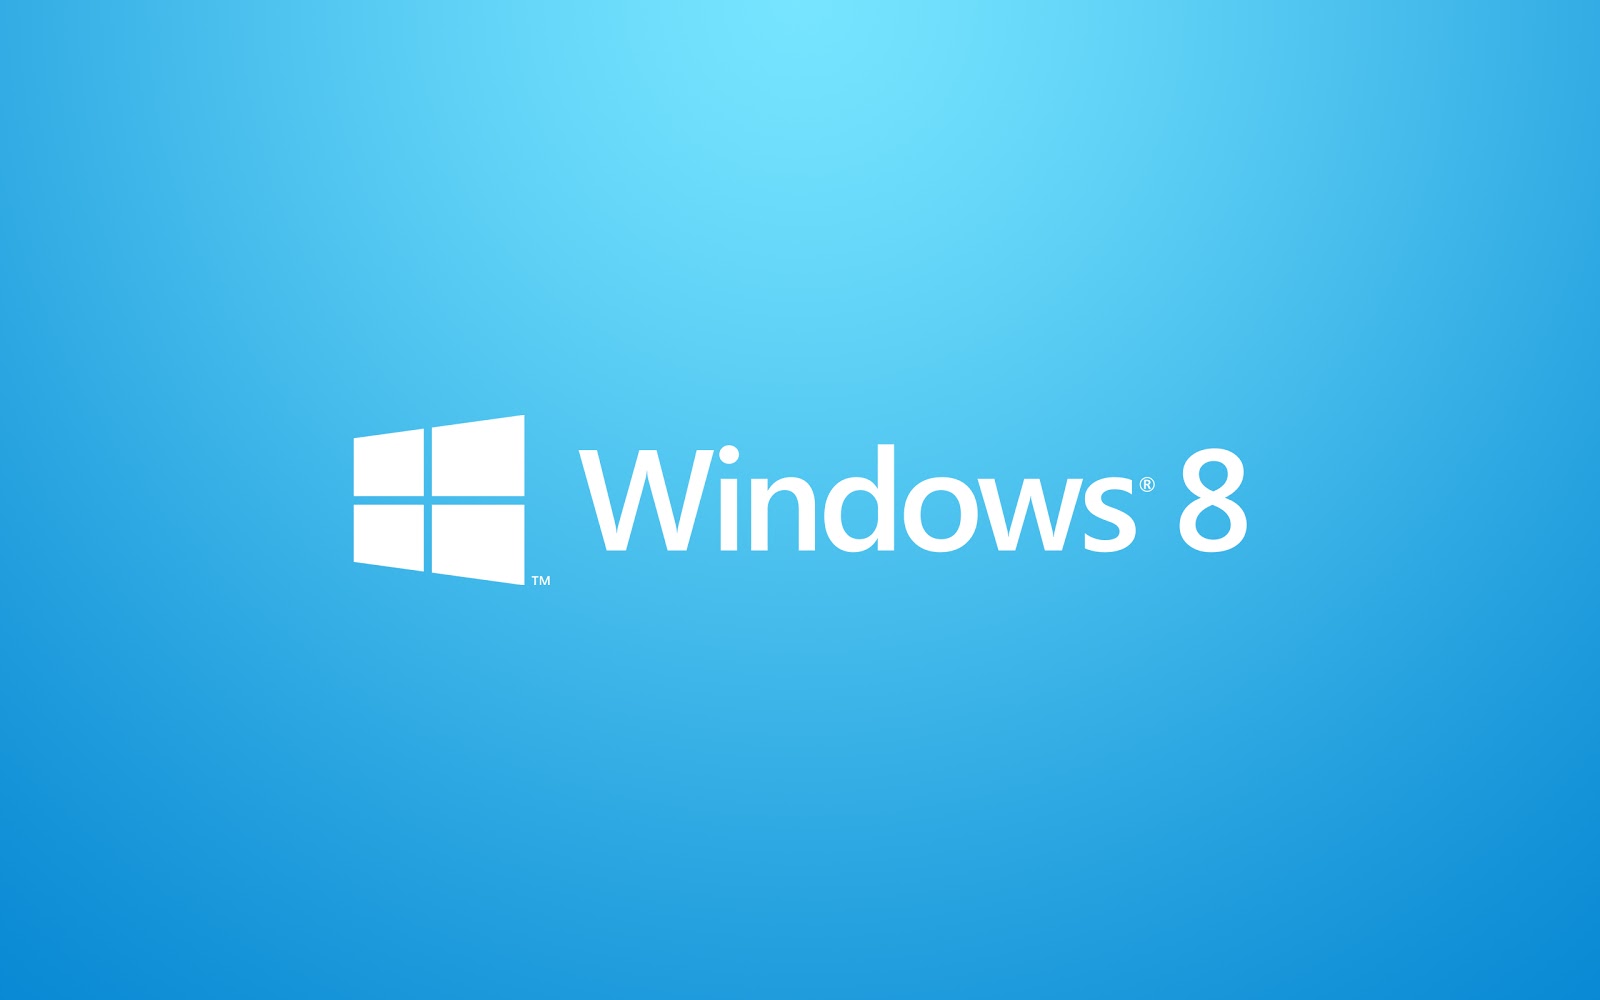 windows 8.1 wallpaper themes,blue,text,aqua,logo,font